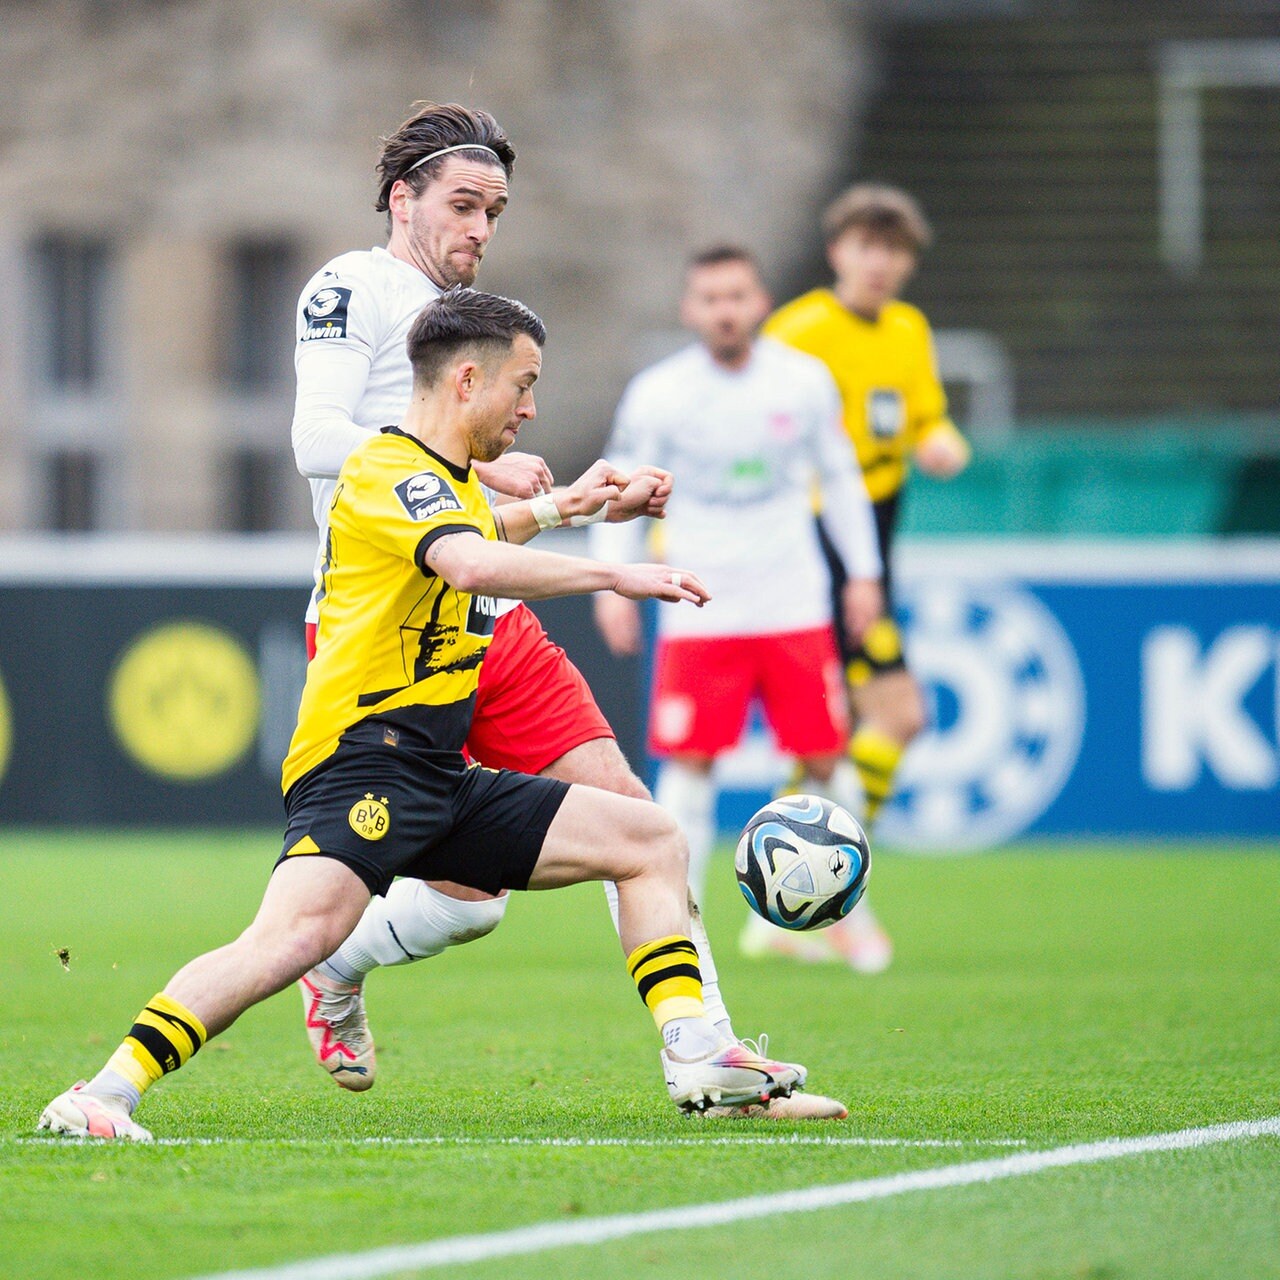 Fußball, 3. Liga: Dortmund II feiert Zittersieg gegen Halle